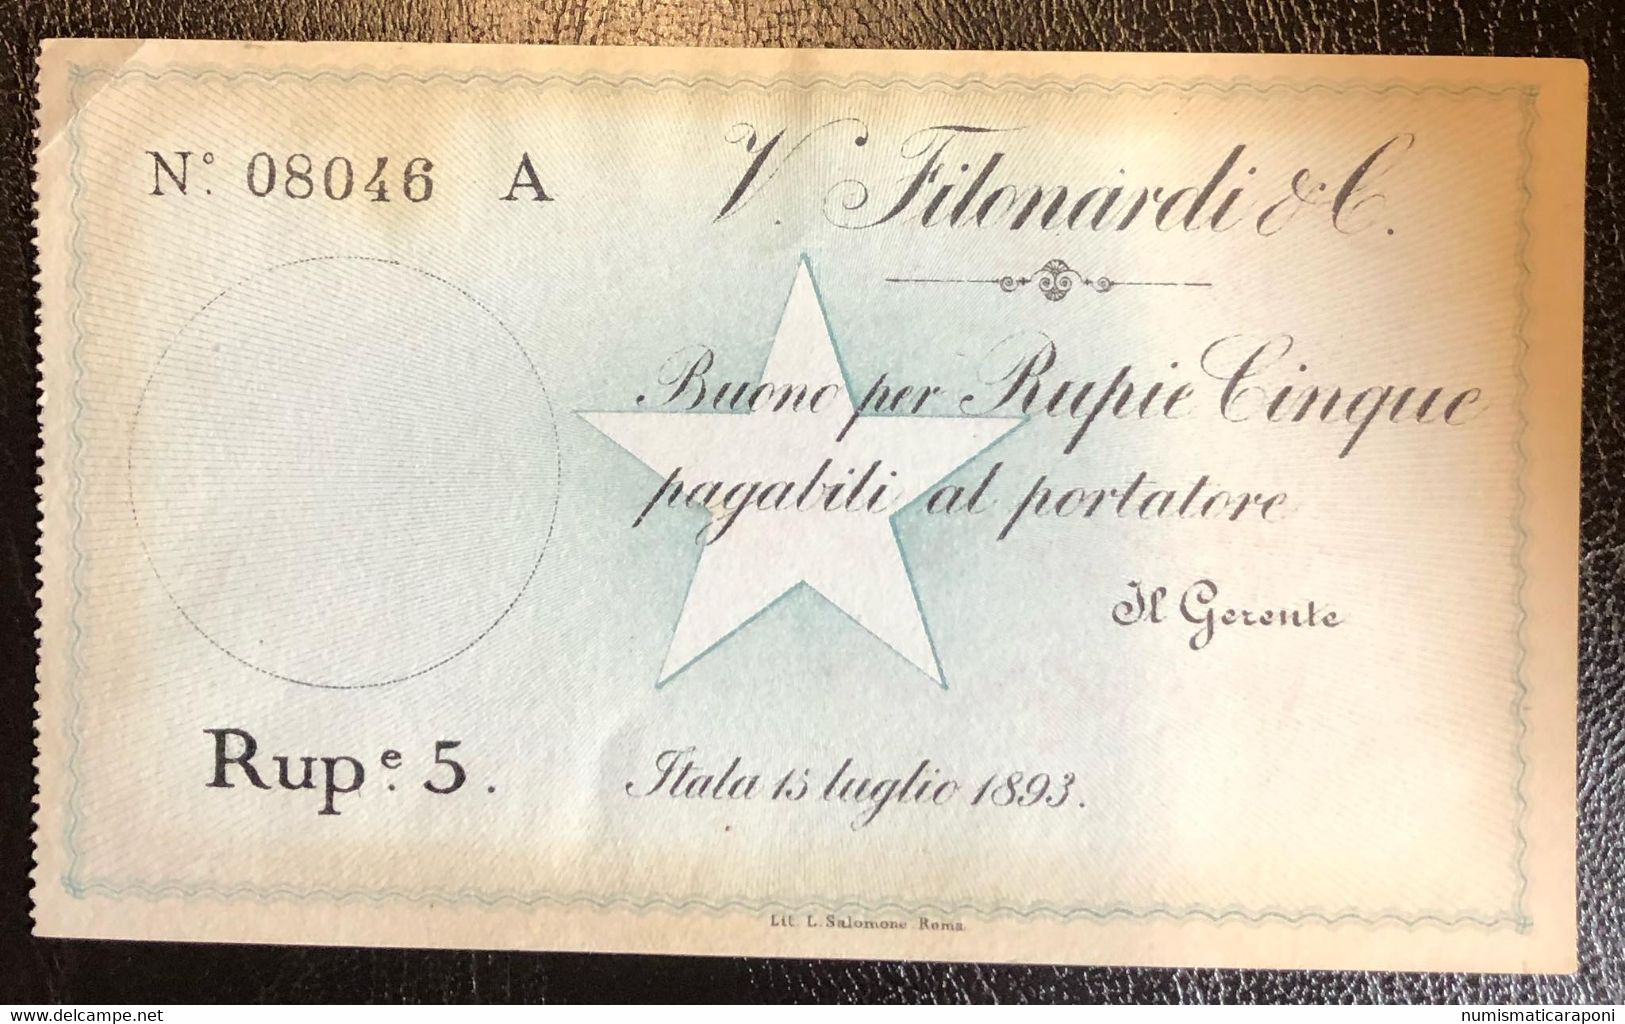 COMPAGNA ITALIANA PER IL BENADIR SOMALIA VINCENZO FILONARDI E C. 1893 5 RUPIE NON EMESSO R5 RRRRR Lotto.2475 - Somalië